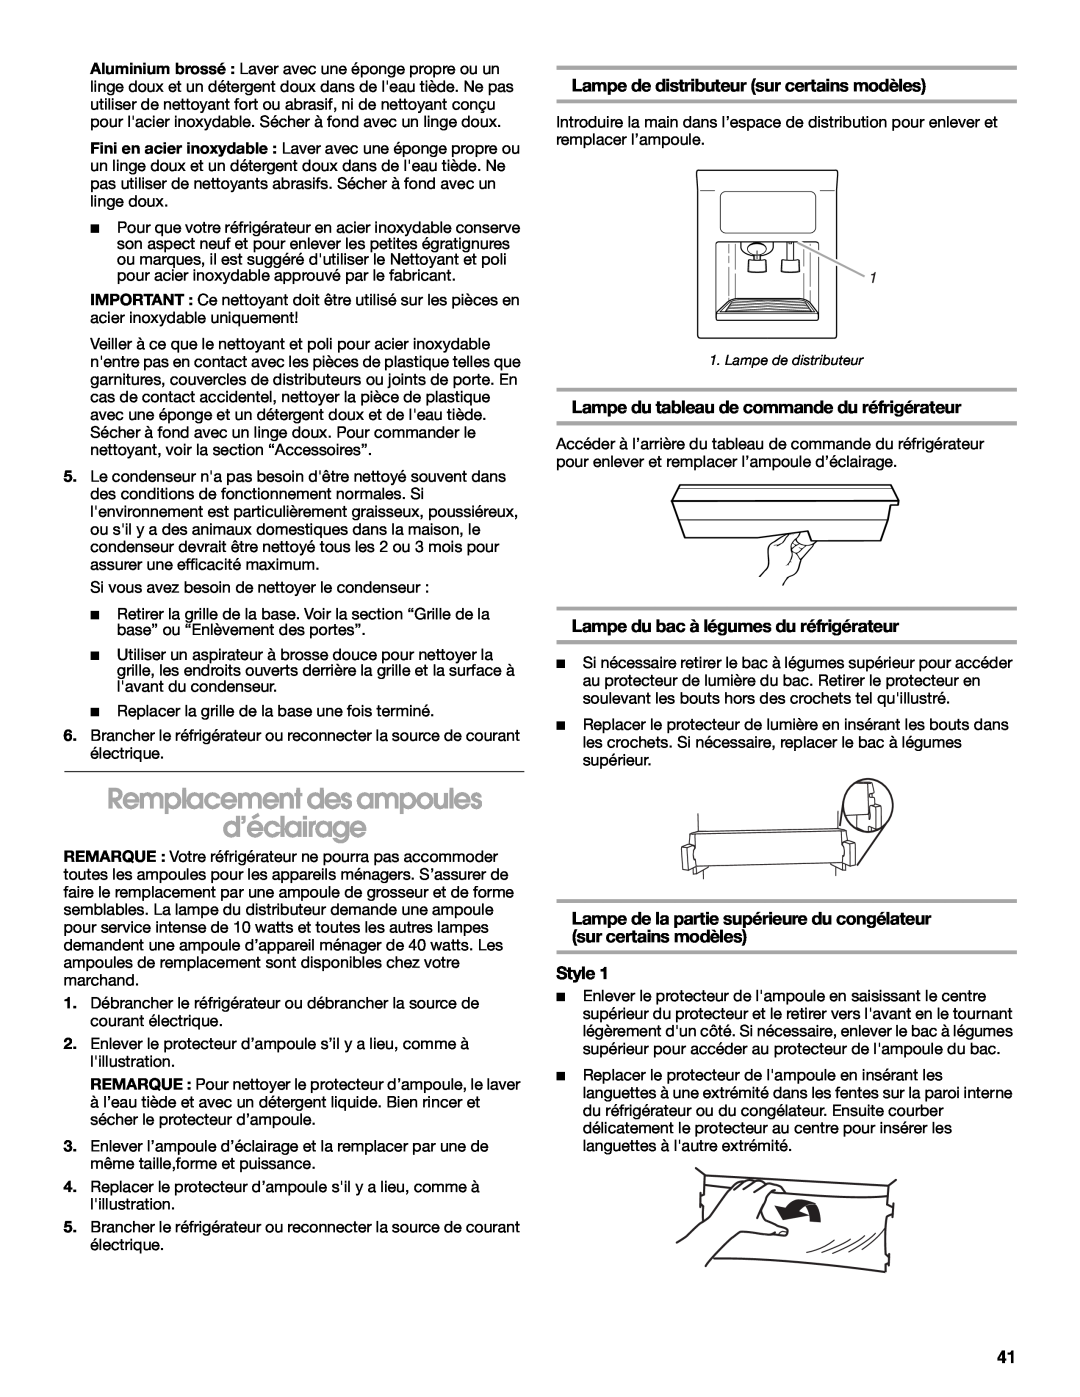 Whirlpool RS22AQXKQ02 manual Remplacement des ampoules d’éclairage, Lampe de distributeur sur certains modèles, Style 